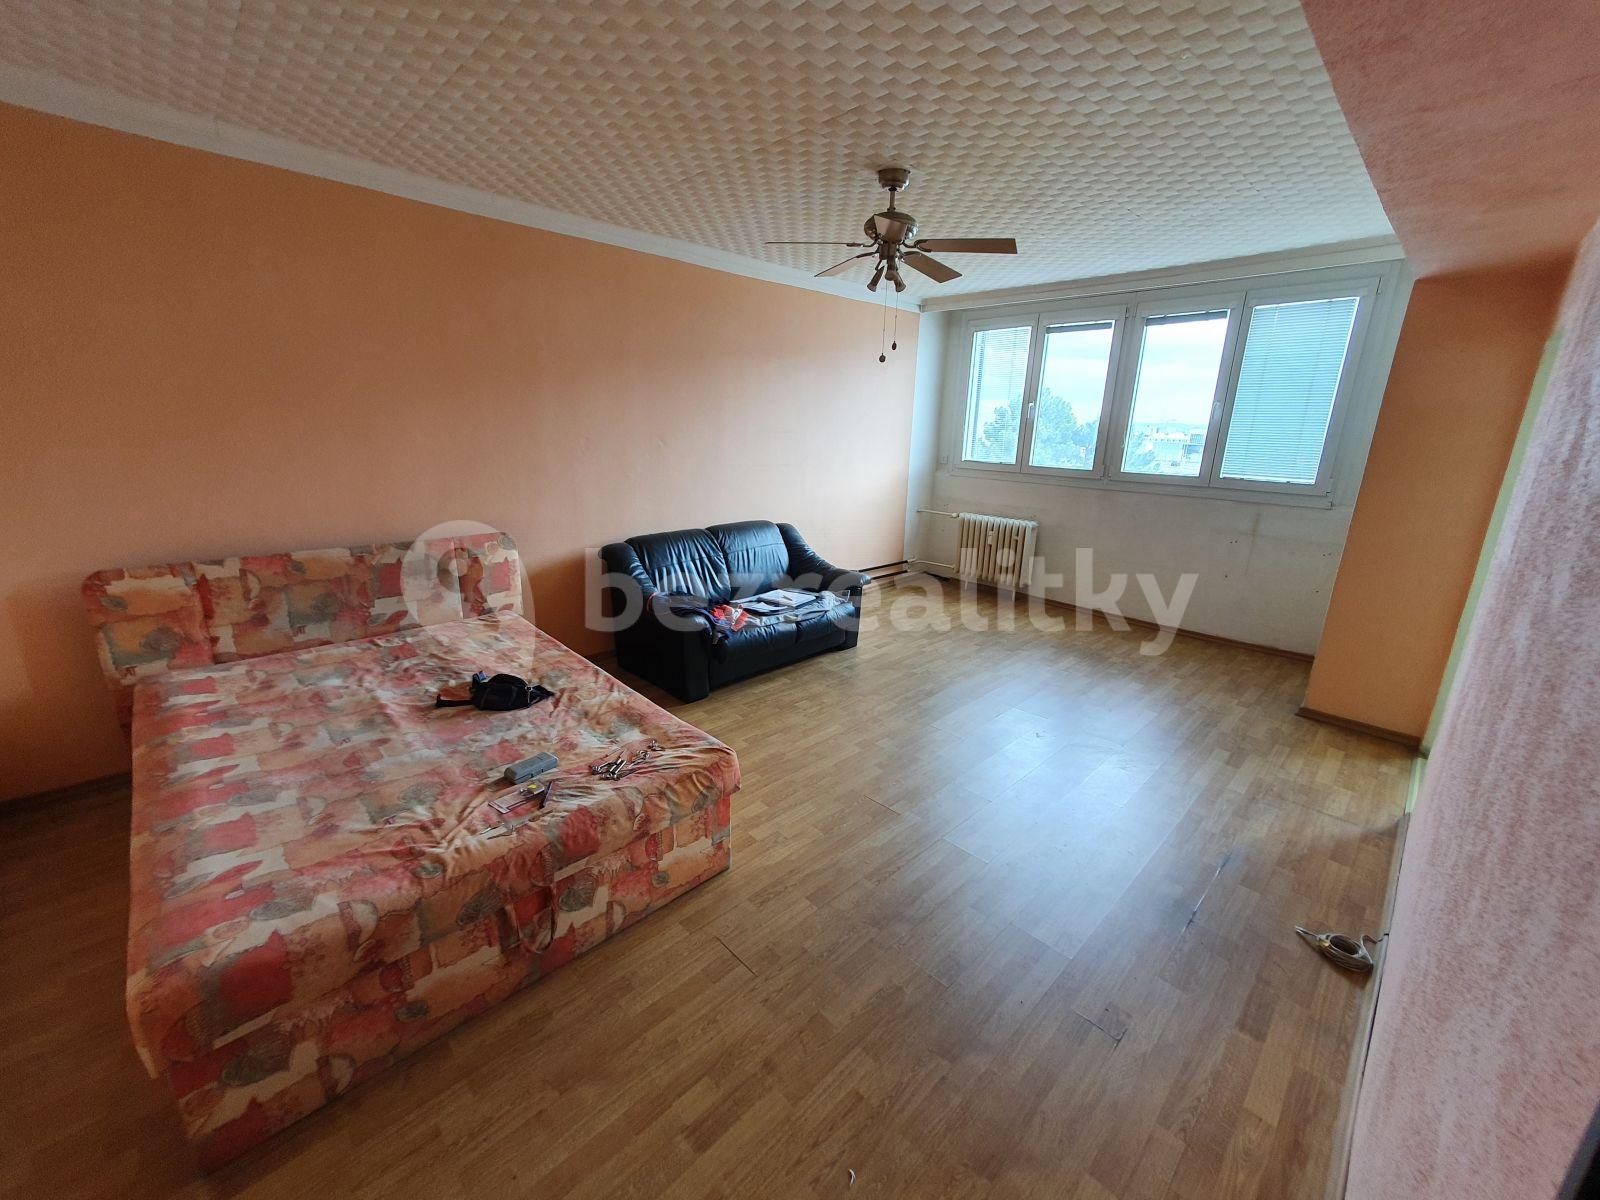 1 bedroom flat to rent, 44 m², tř. Václava Klementa, Mladá Boleslav, Středočeský Region